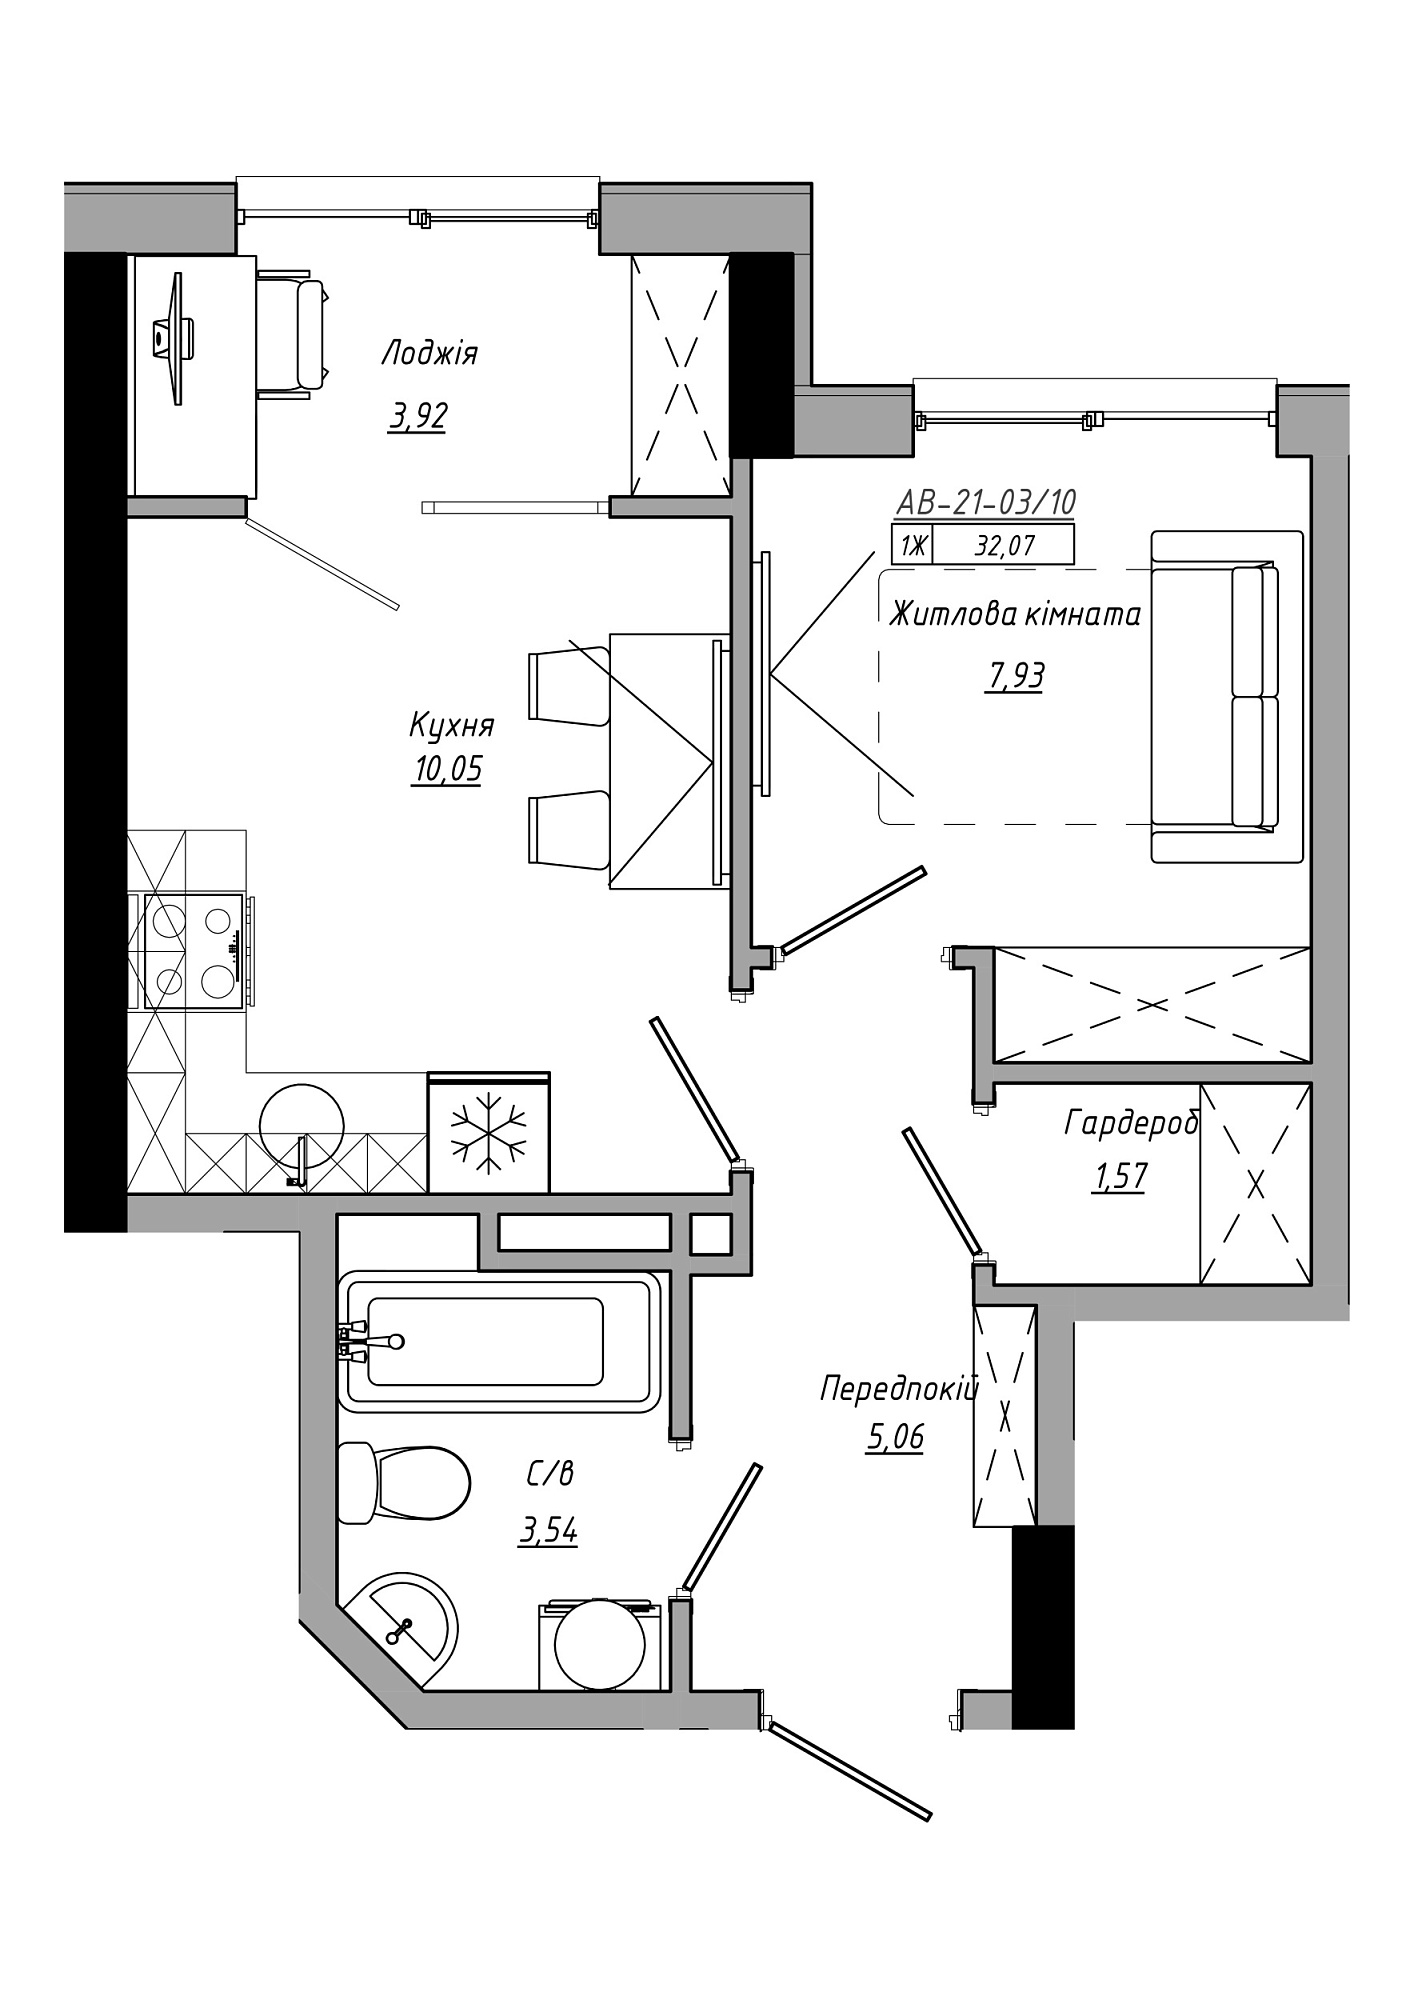 Планировка 1-к квартира площей 32.07м2, AB-21-03/00010.